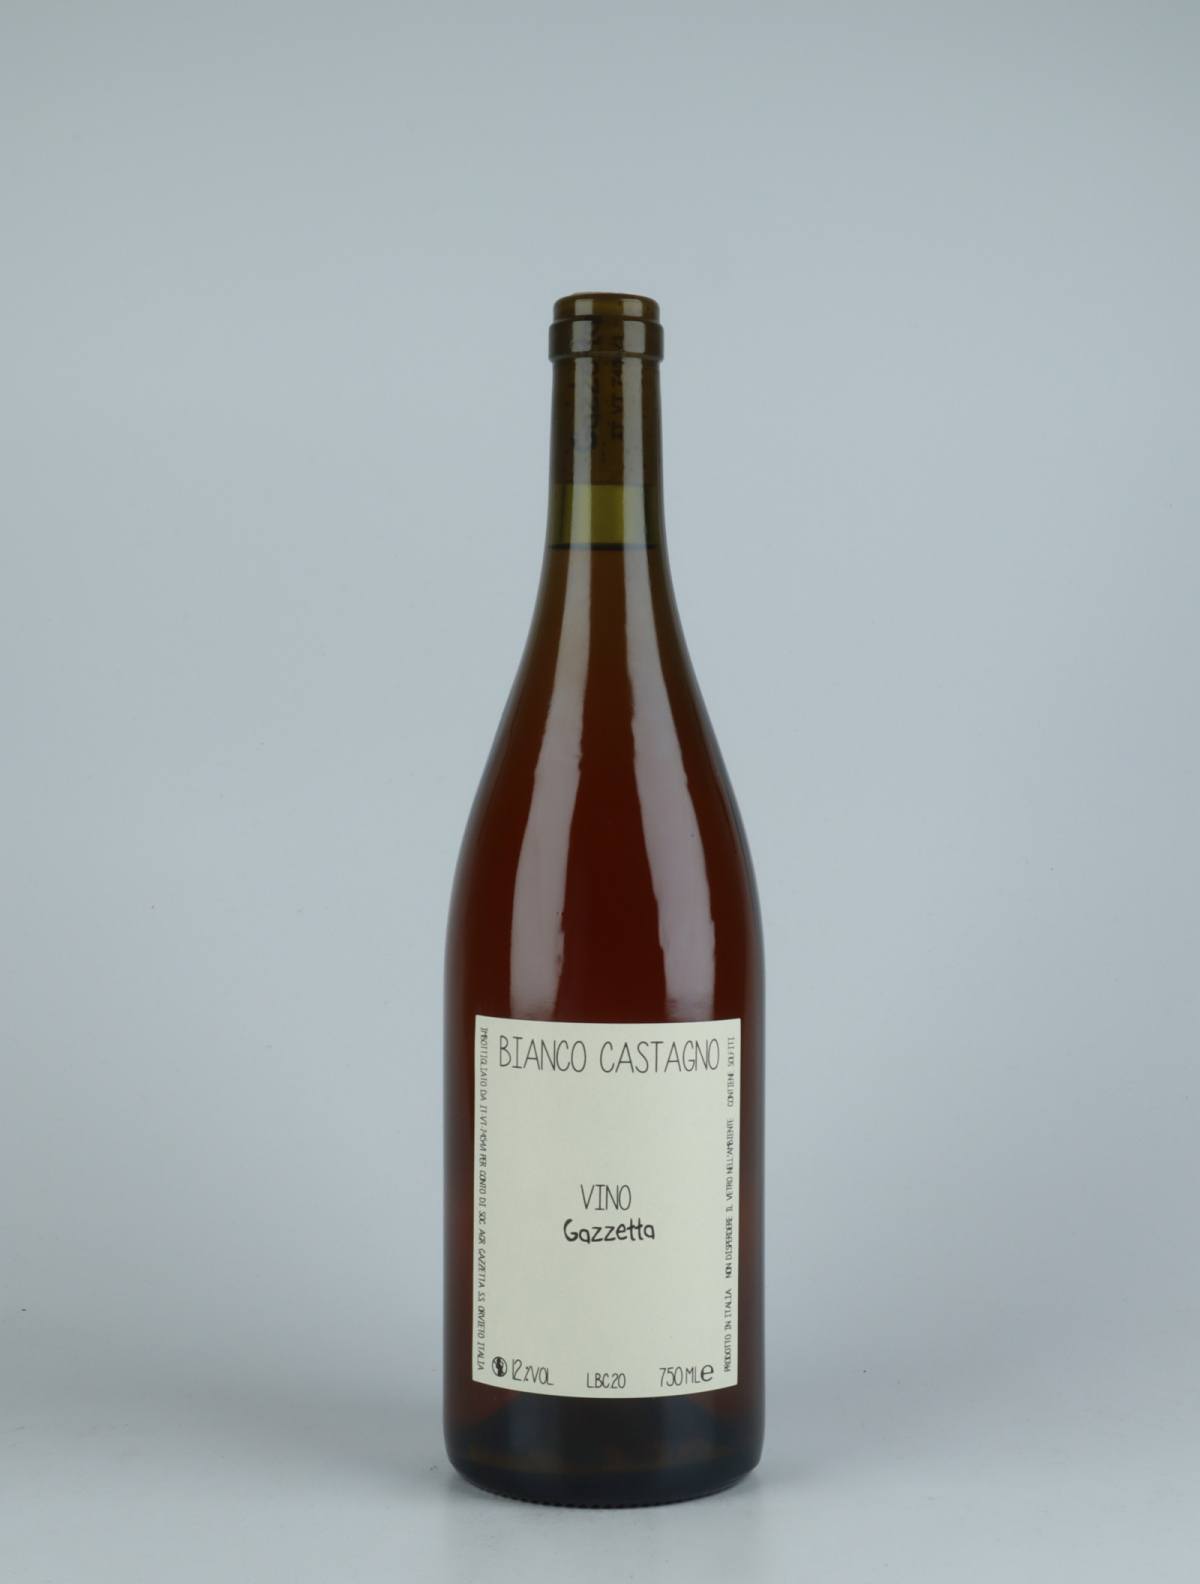 A bottle 2020 Vino Bianco Castagno Orange wine from Gazzetta, Lazio in Italy